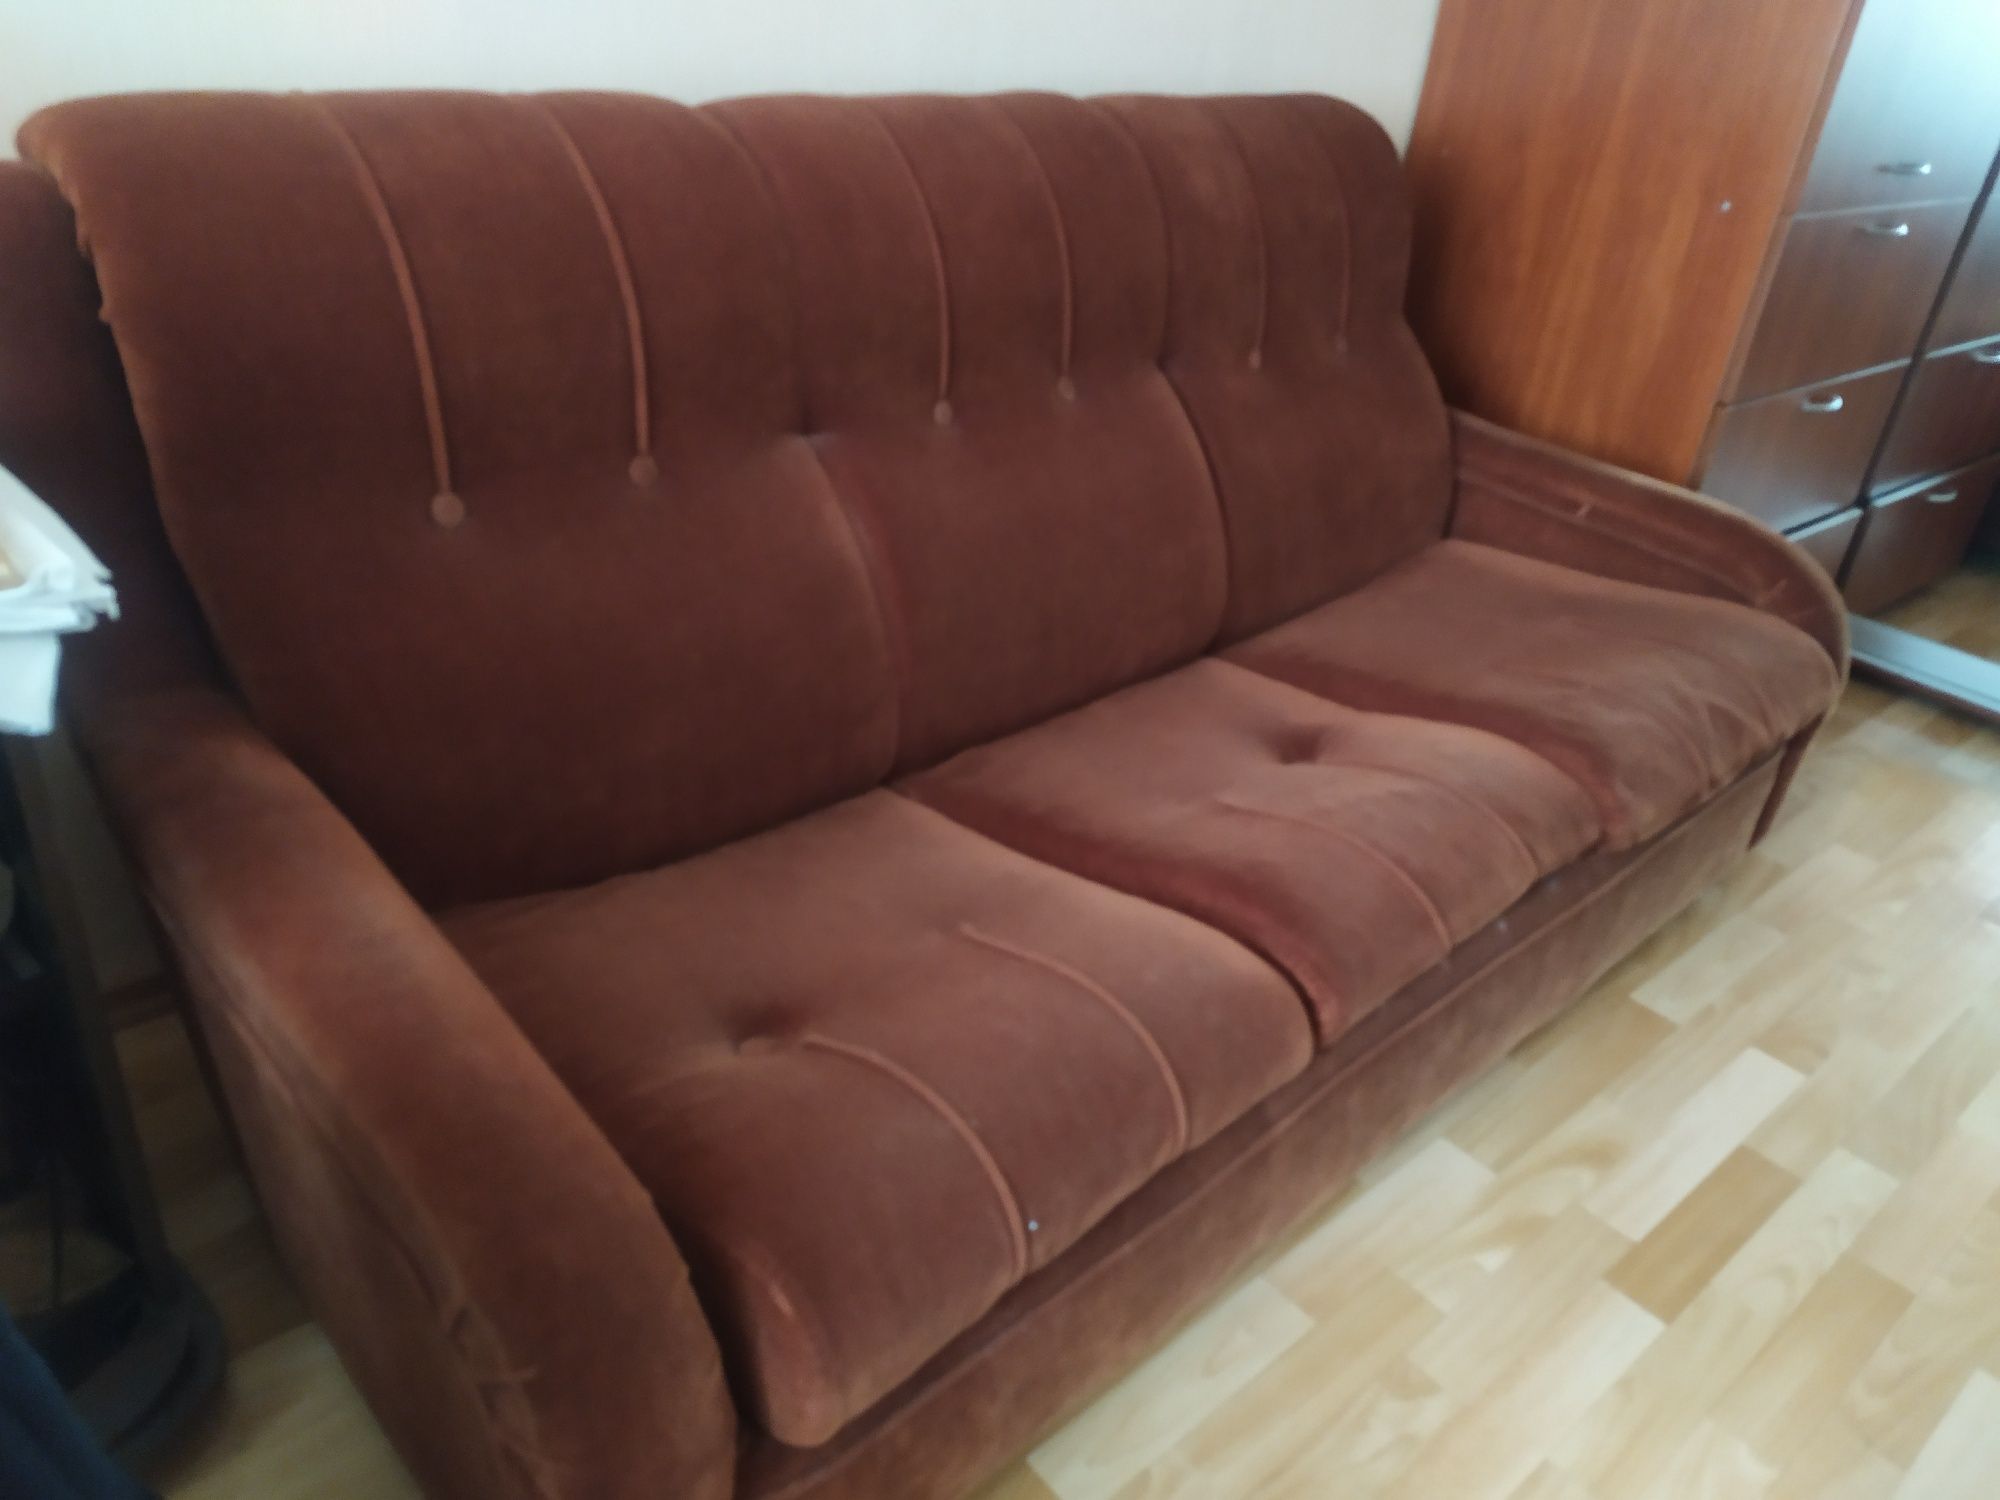 Двухместная диван - кровать  в хорошем состоянии